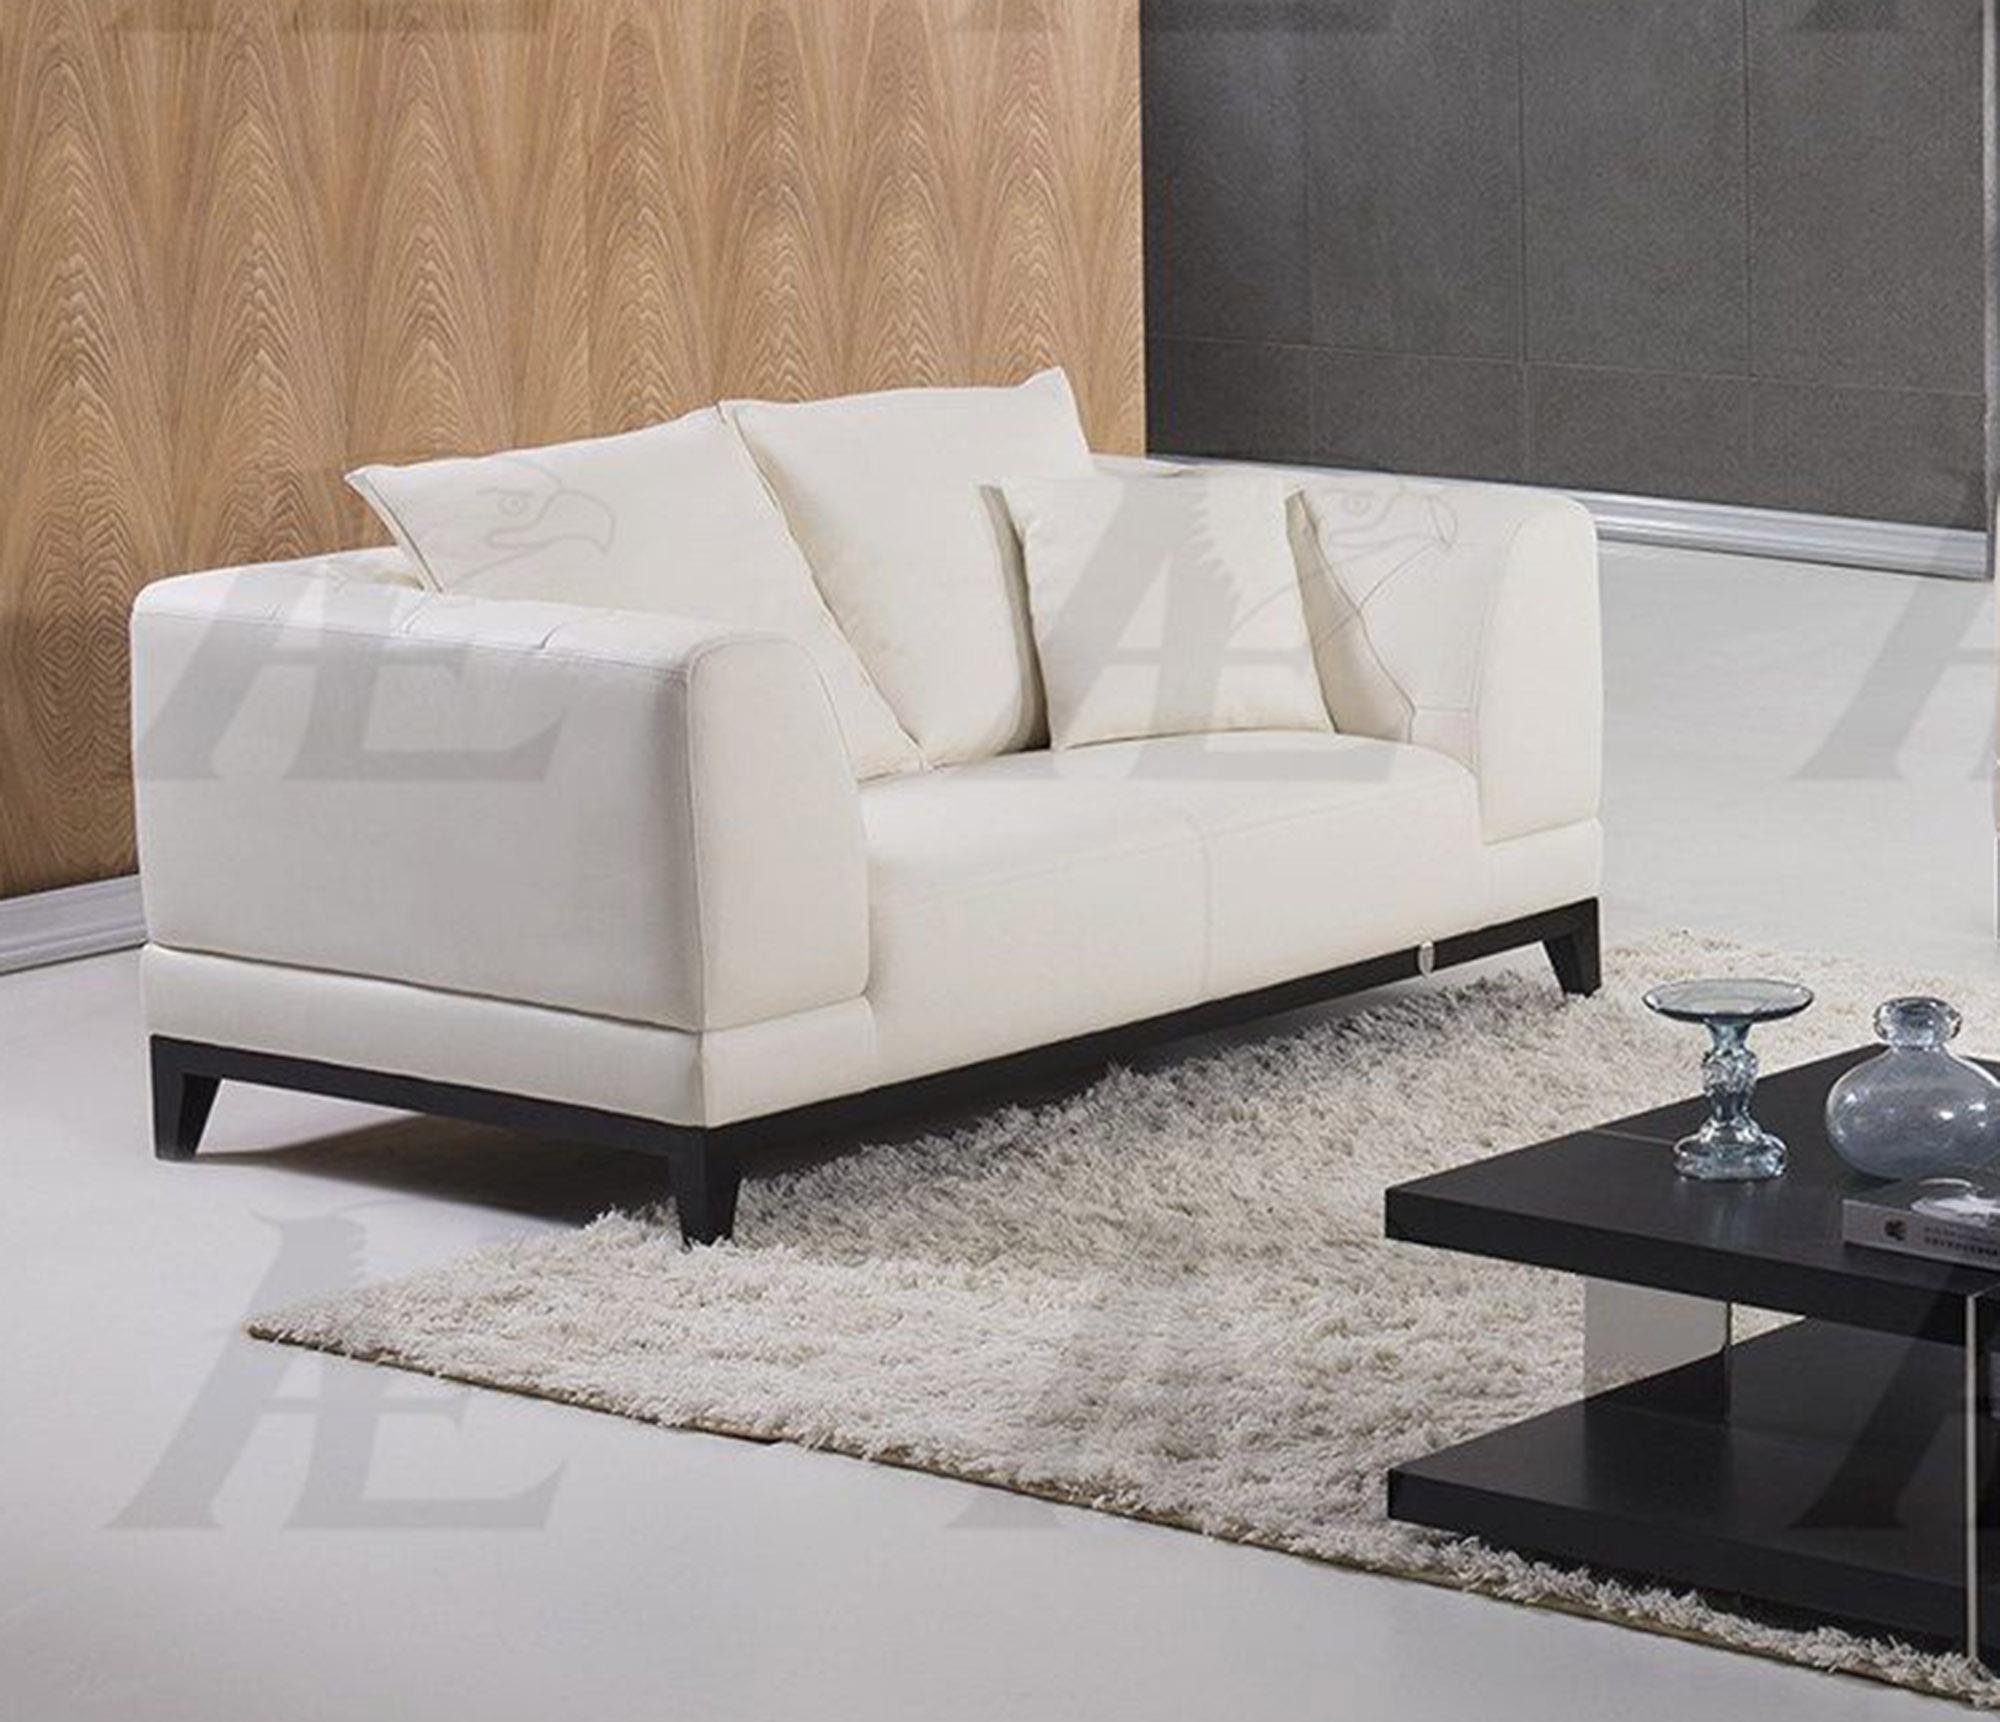 

    
American Eagle Furniture EK065-W Sofa and Loveseat Set White EK065-W Set-2
